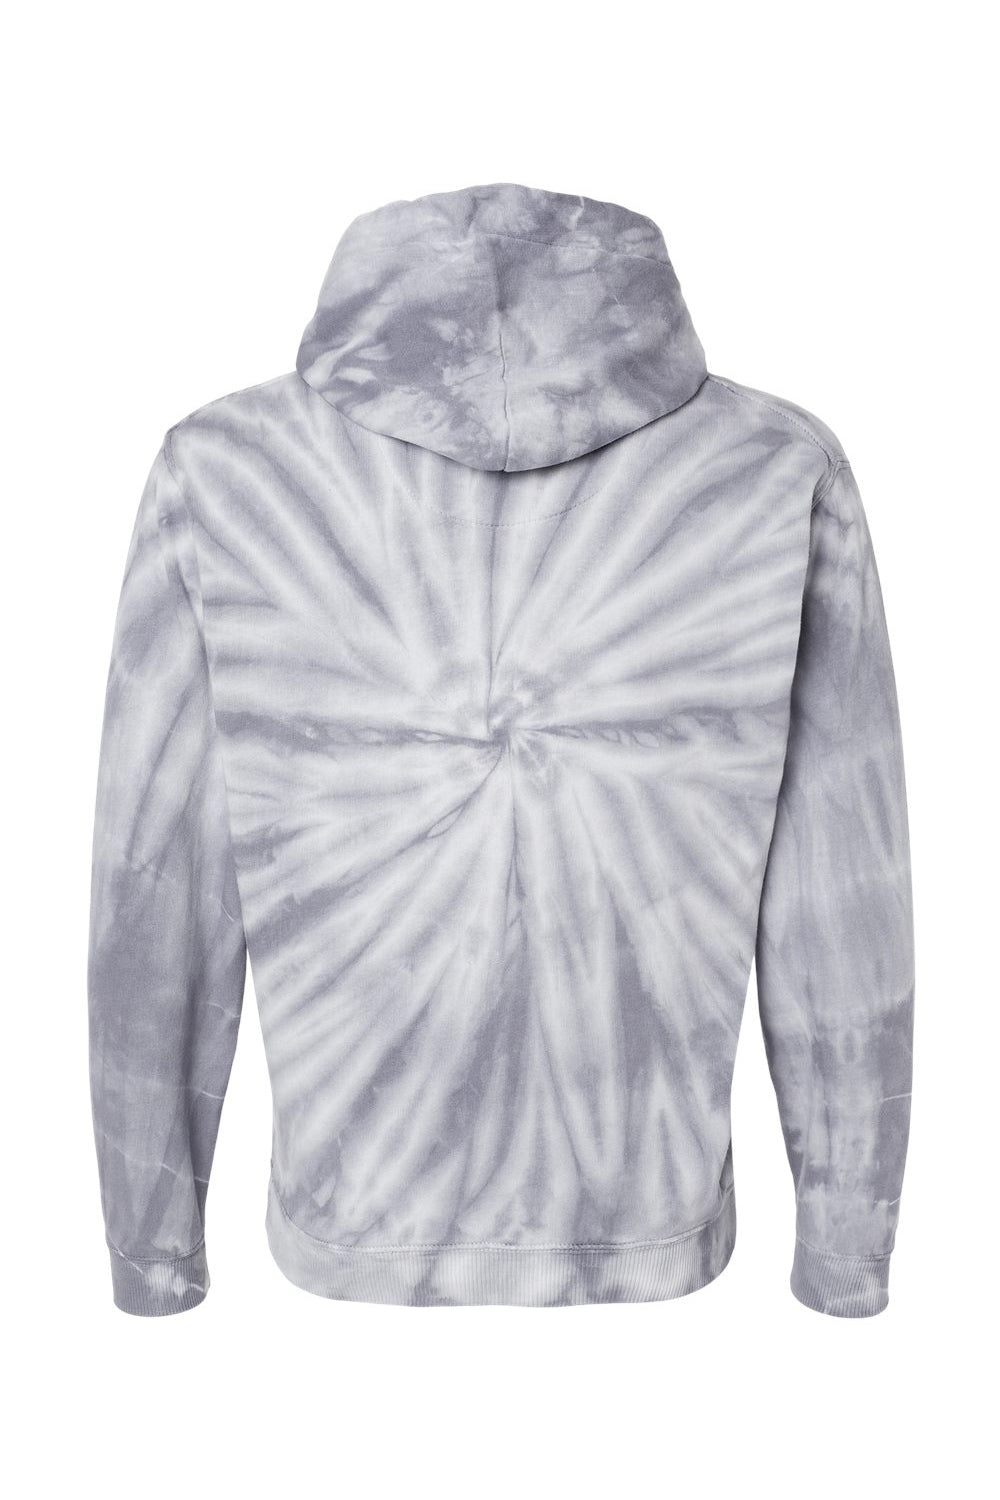 Dyenomite 854CY Mens Cyclone Tie Dyed Hooded Sweatshirt Hoodie Silver Grey Flat Back